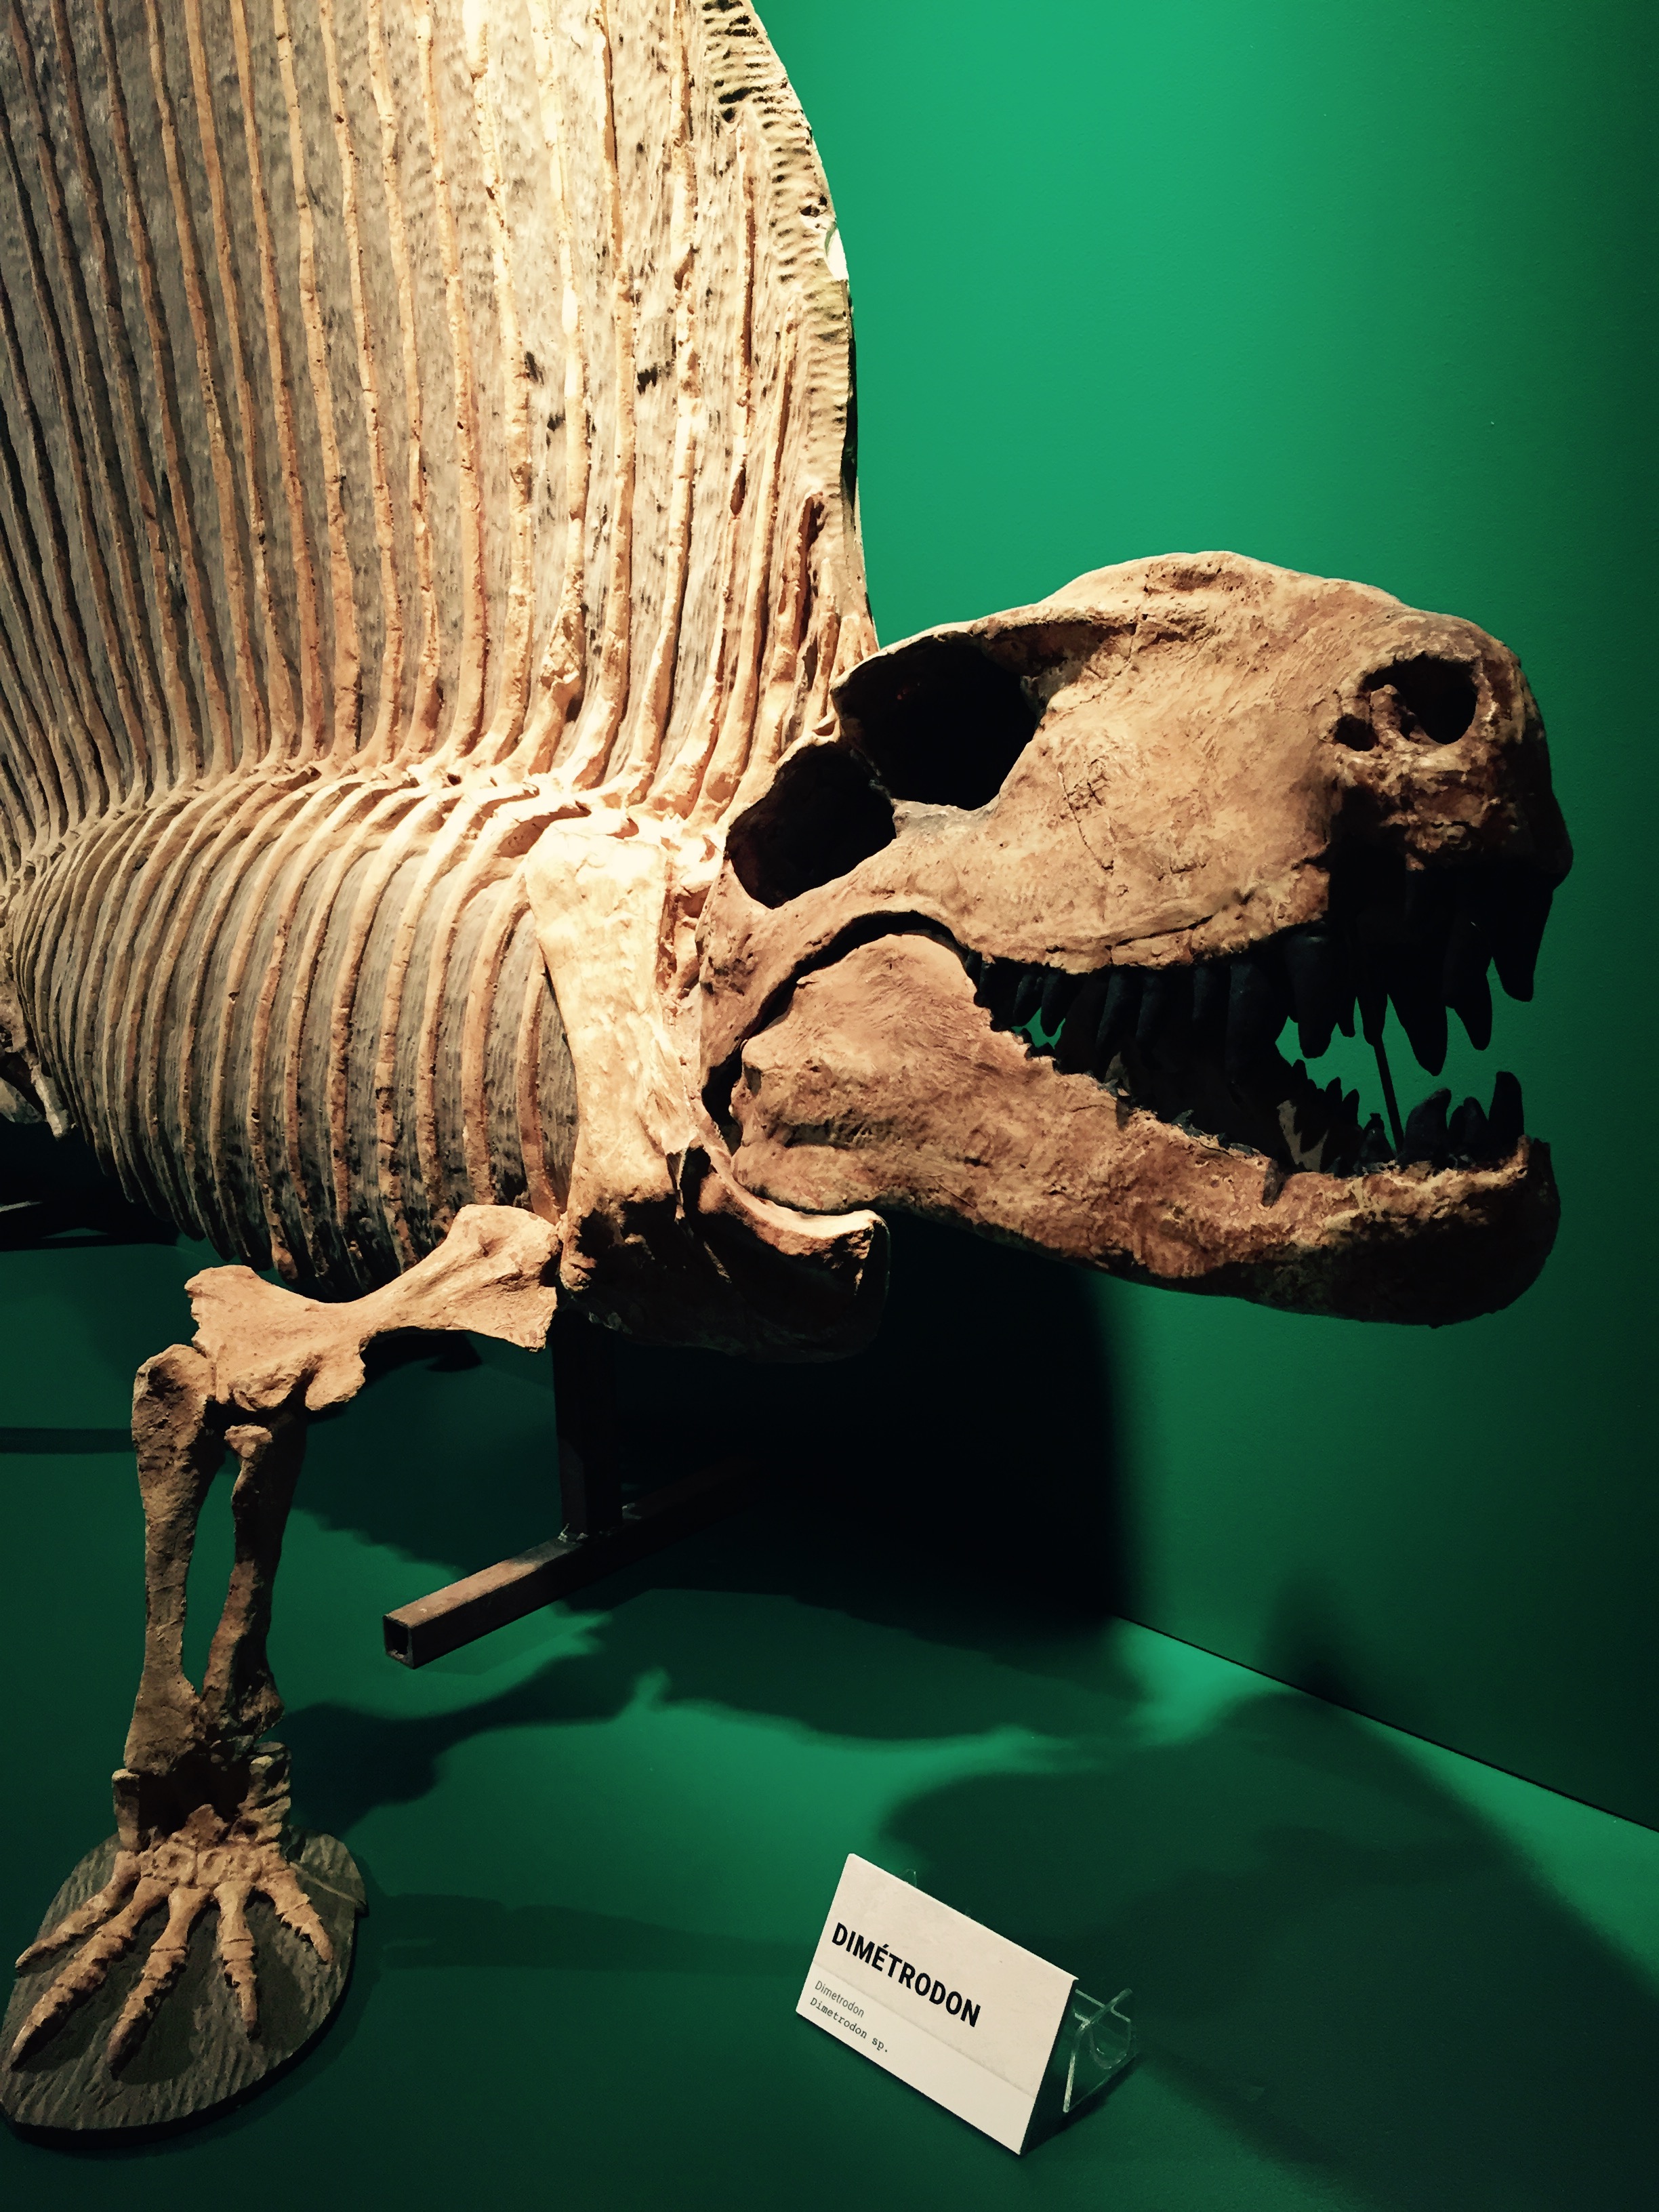 L’une des pièces maîtresses de l’exposition rendue possible grâce au Parc national de Migusha et du Musée de la Paléontologie et de l’Évolution (MPE).